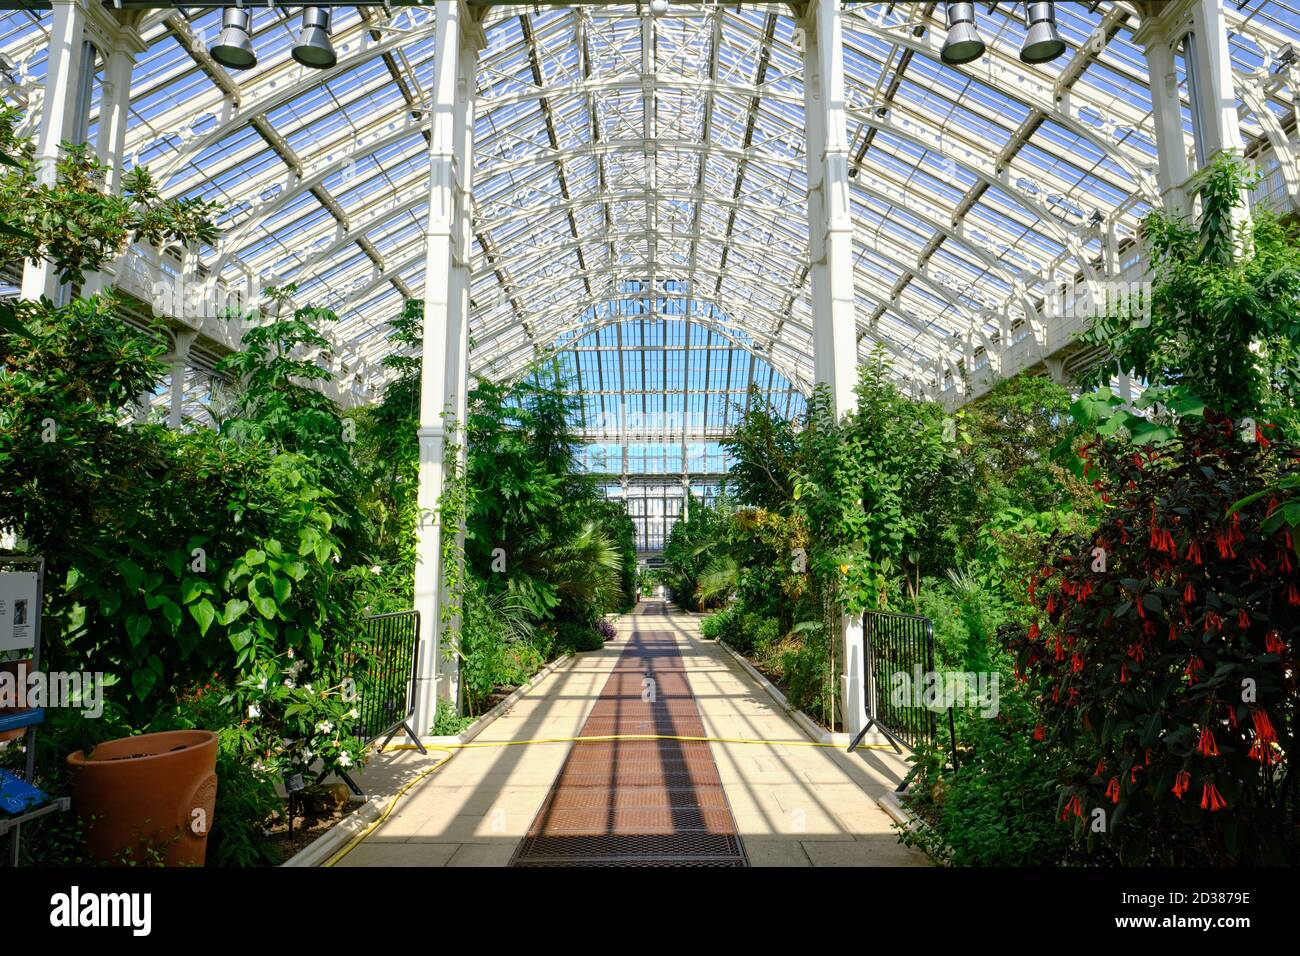 La maison Temperate dans les jardins botaniques royaux, Kew, la plus grande des célèbres serres de verre victoriennes. Banque D'Images